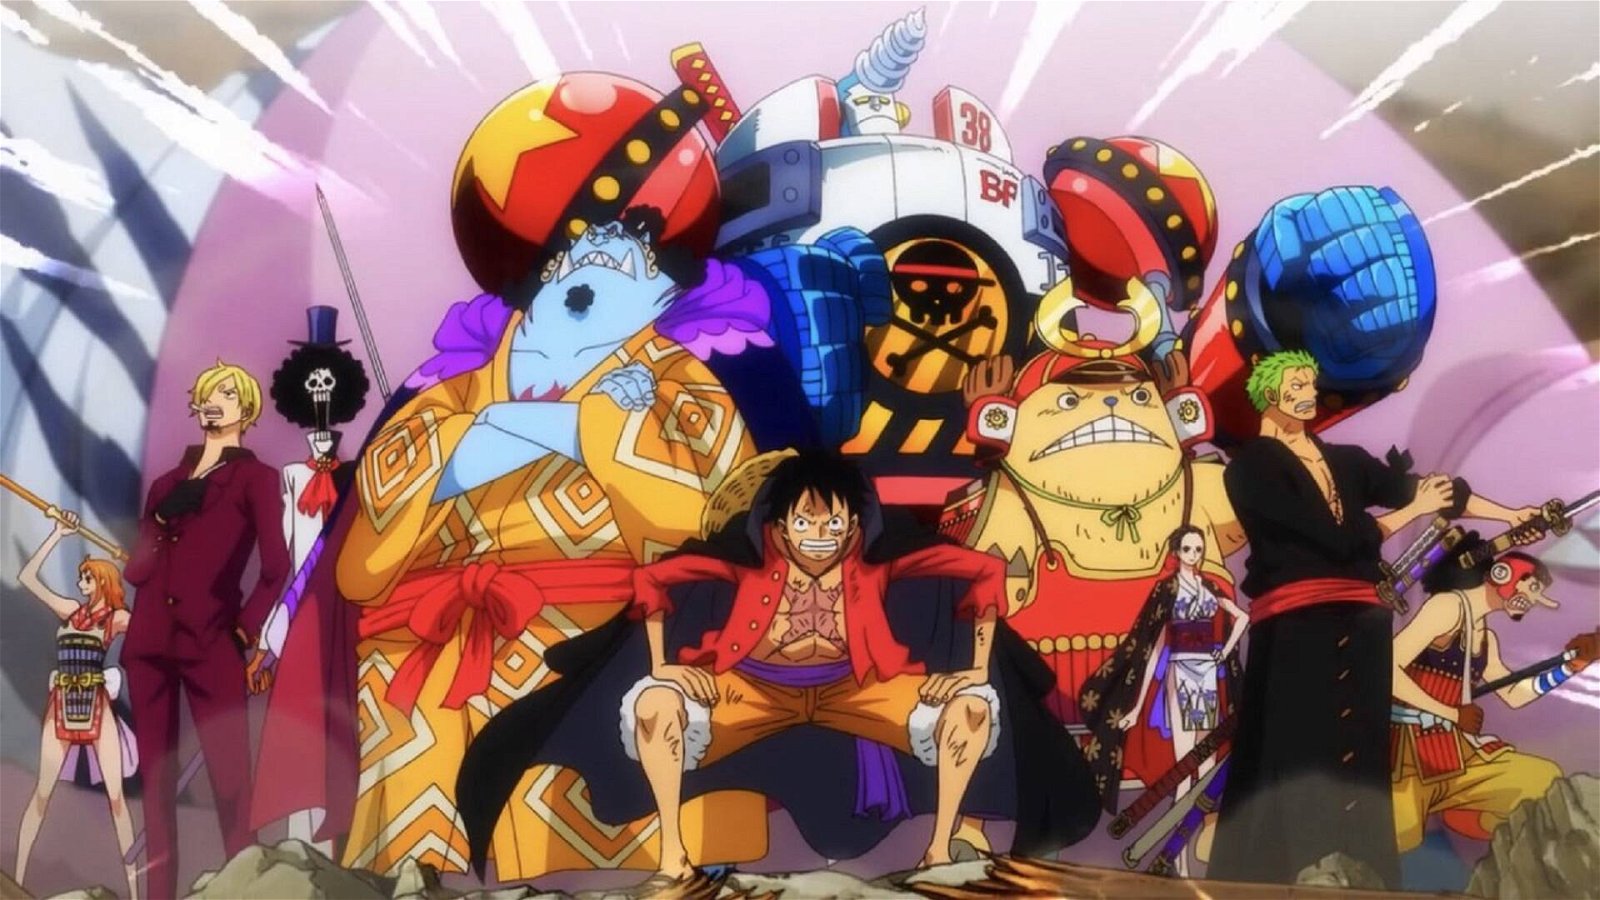 Immagine di Toei Animation sotto attacco hacker, One Piece e altri anime sospesi